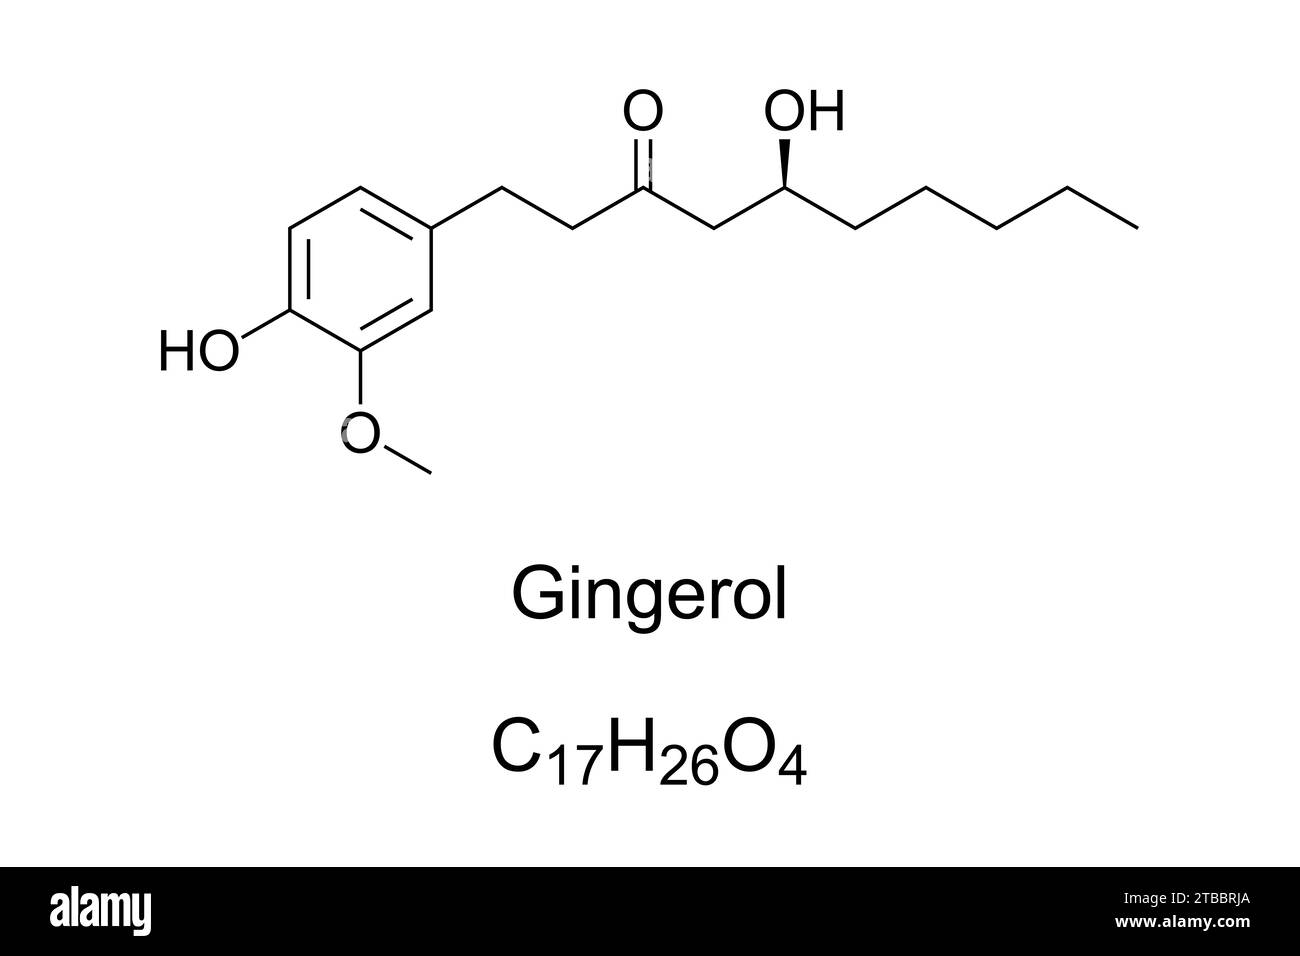 Gingerol, chemische Formel und Struktur. Phenolische phytochemische Verbindung, die in frischem Ingwer gefunden wird und Wärmerezeptoren auf der Zunge aktiviert. Stockfoto